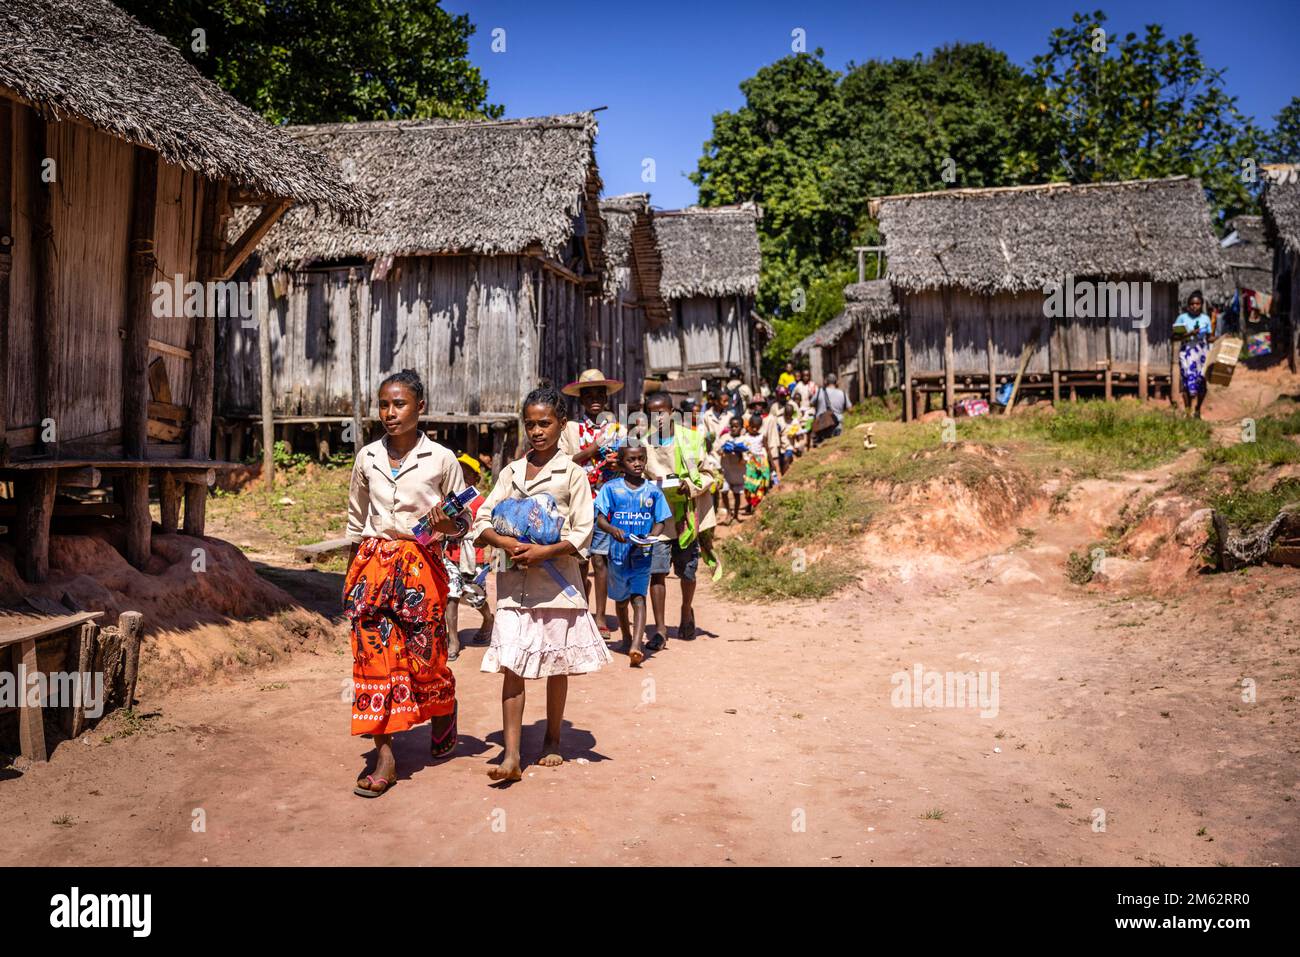 Les écoliers rentrent à la maison après l'école dans le village traditionnel d'Ampahantany, Madagascar, Afrique Banque D'Images